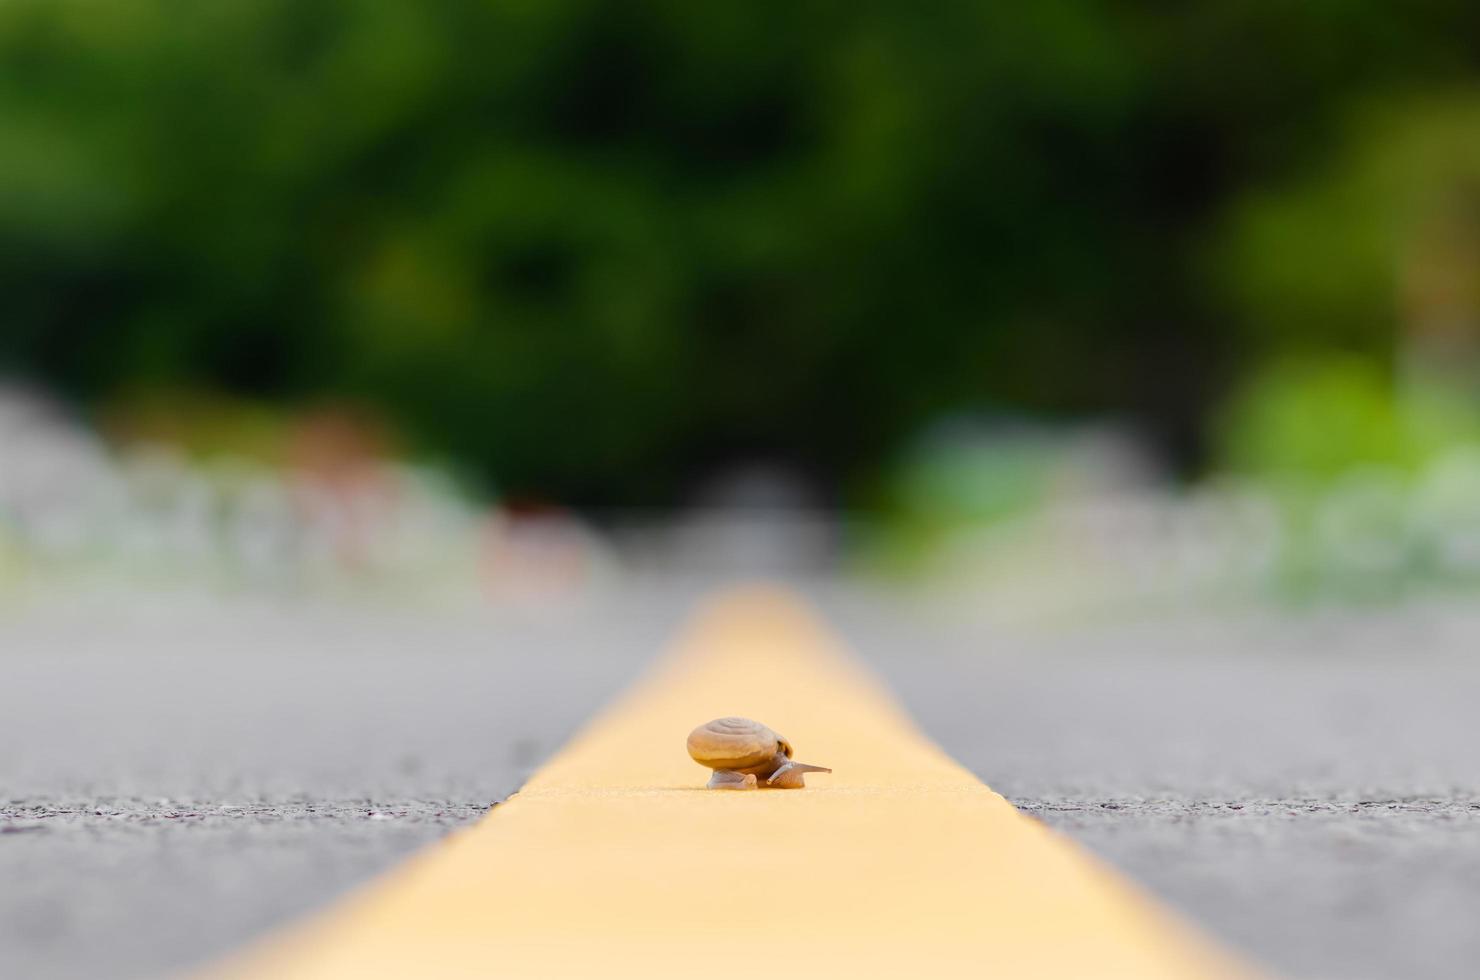 un caracol cruzando en el camino medio del camino solo. concepto de seguridad vial. foto